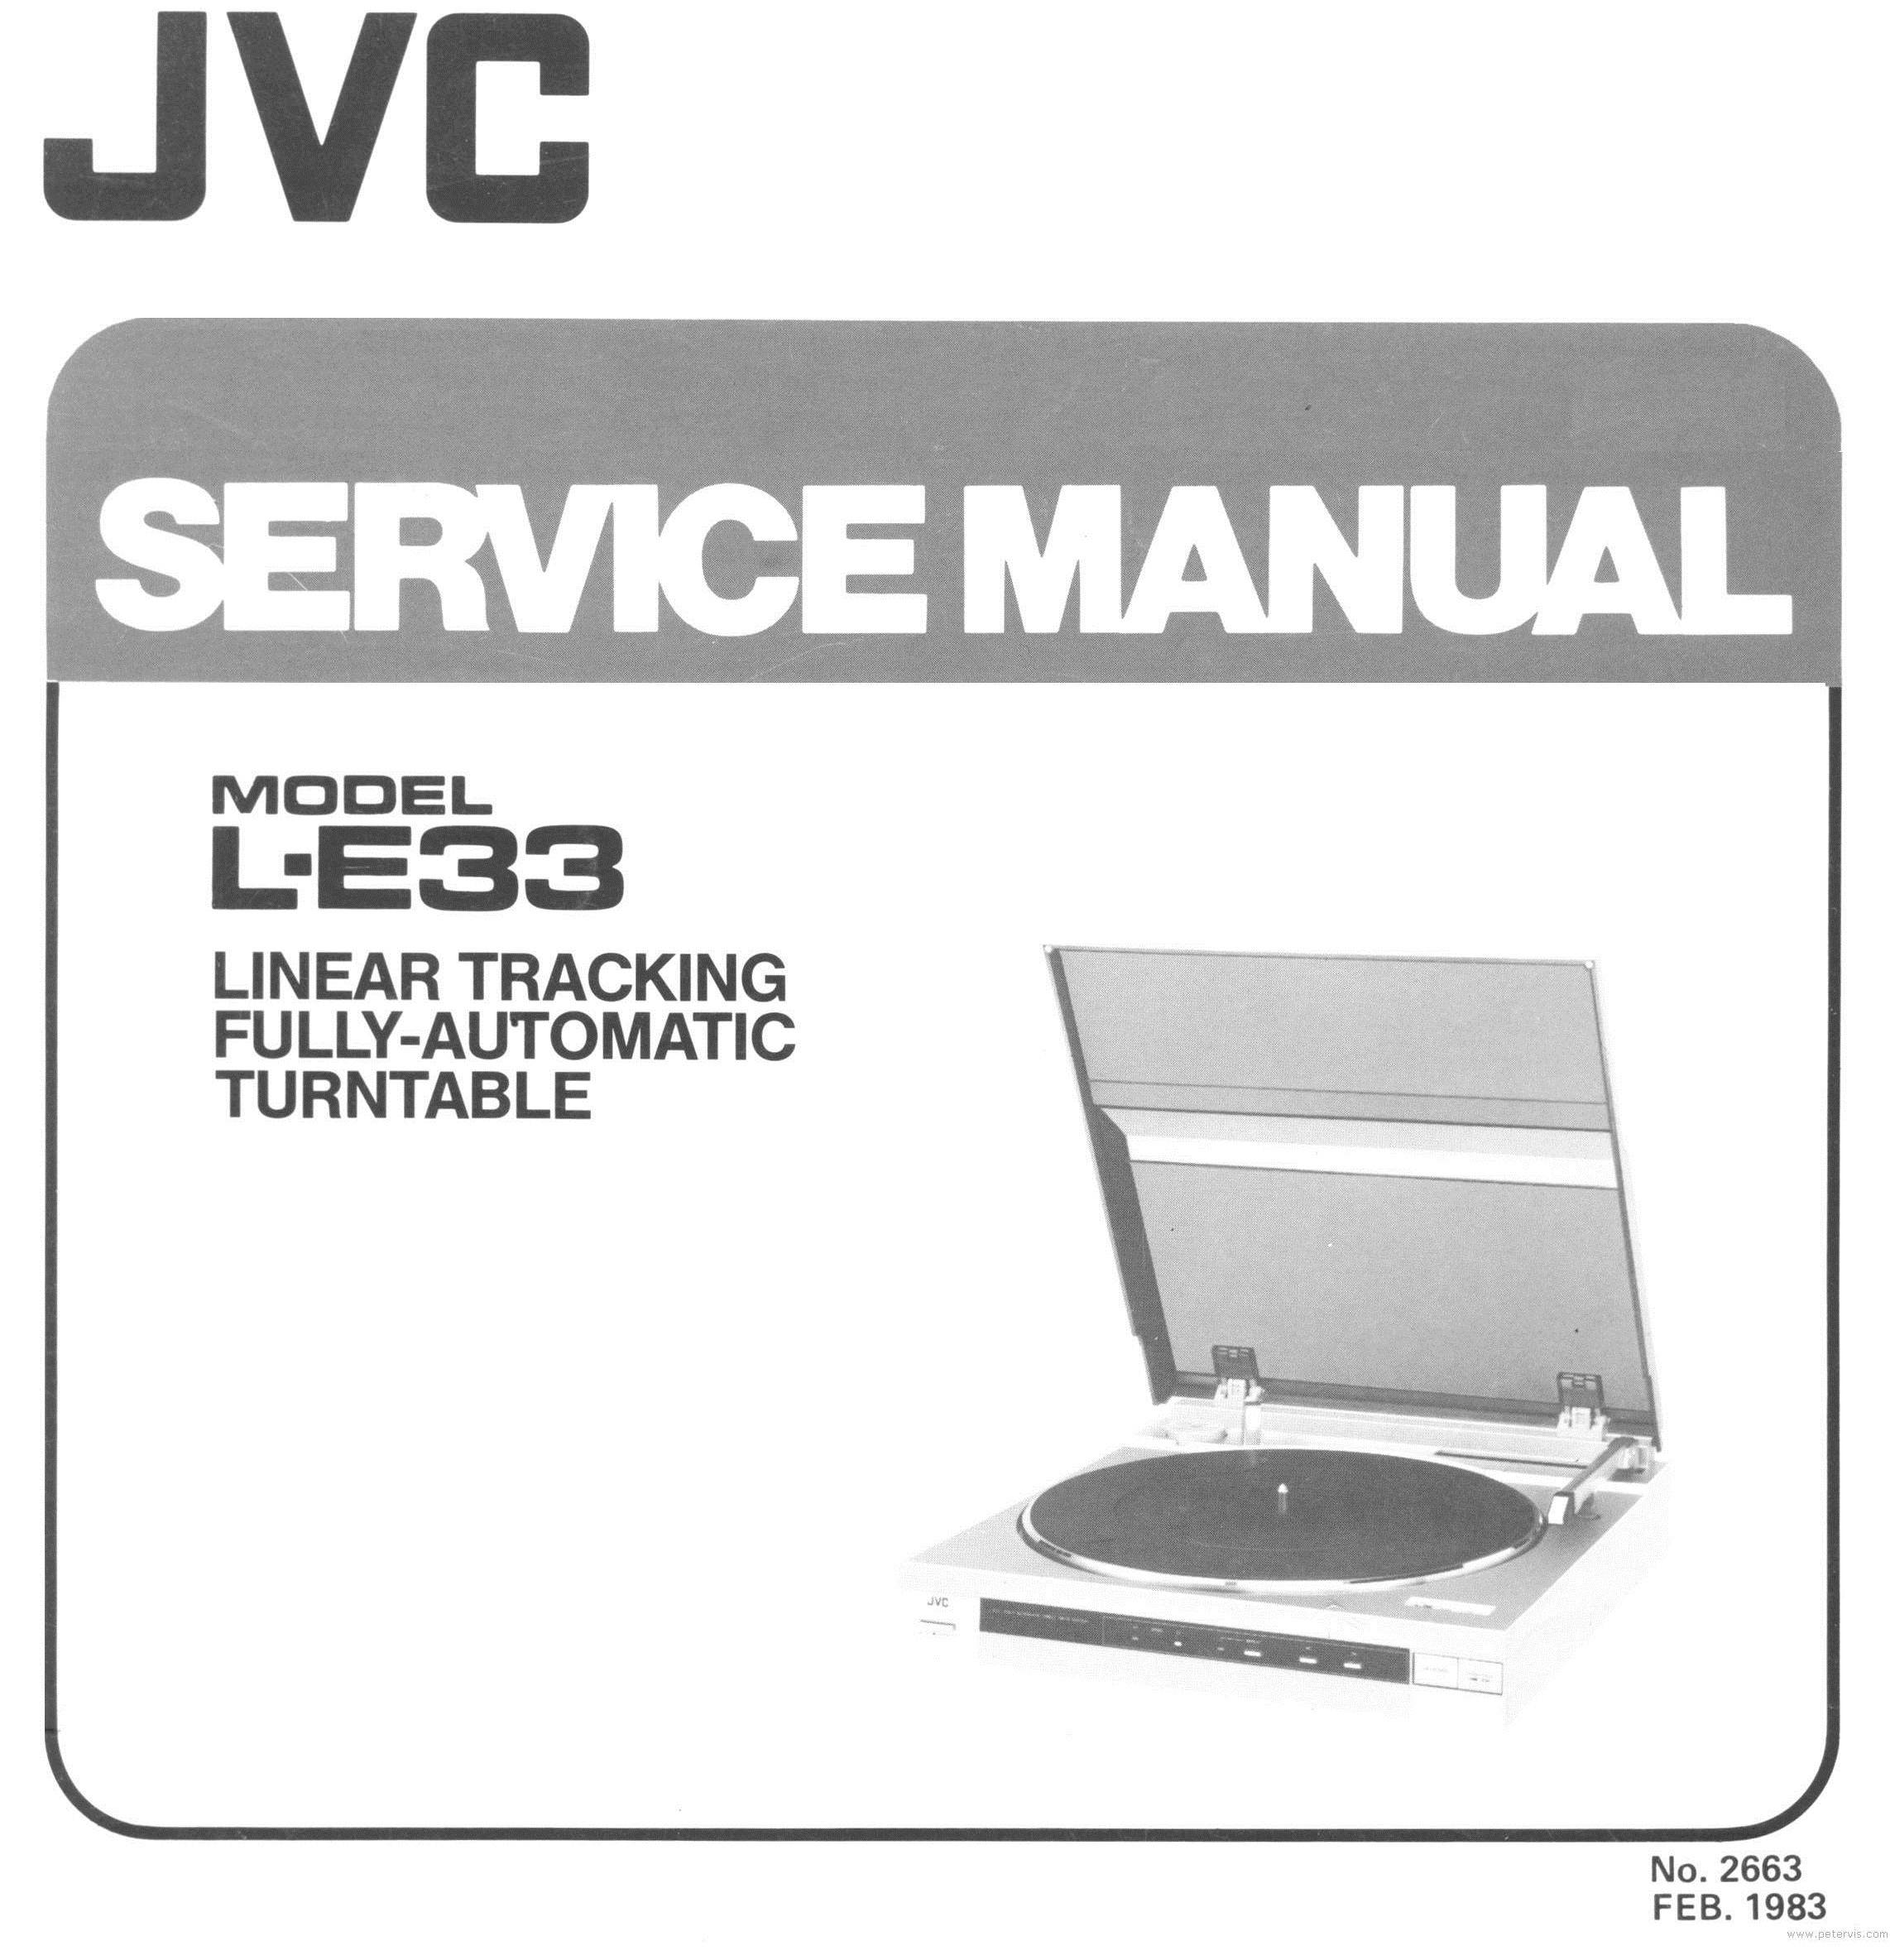 JVC L-E33